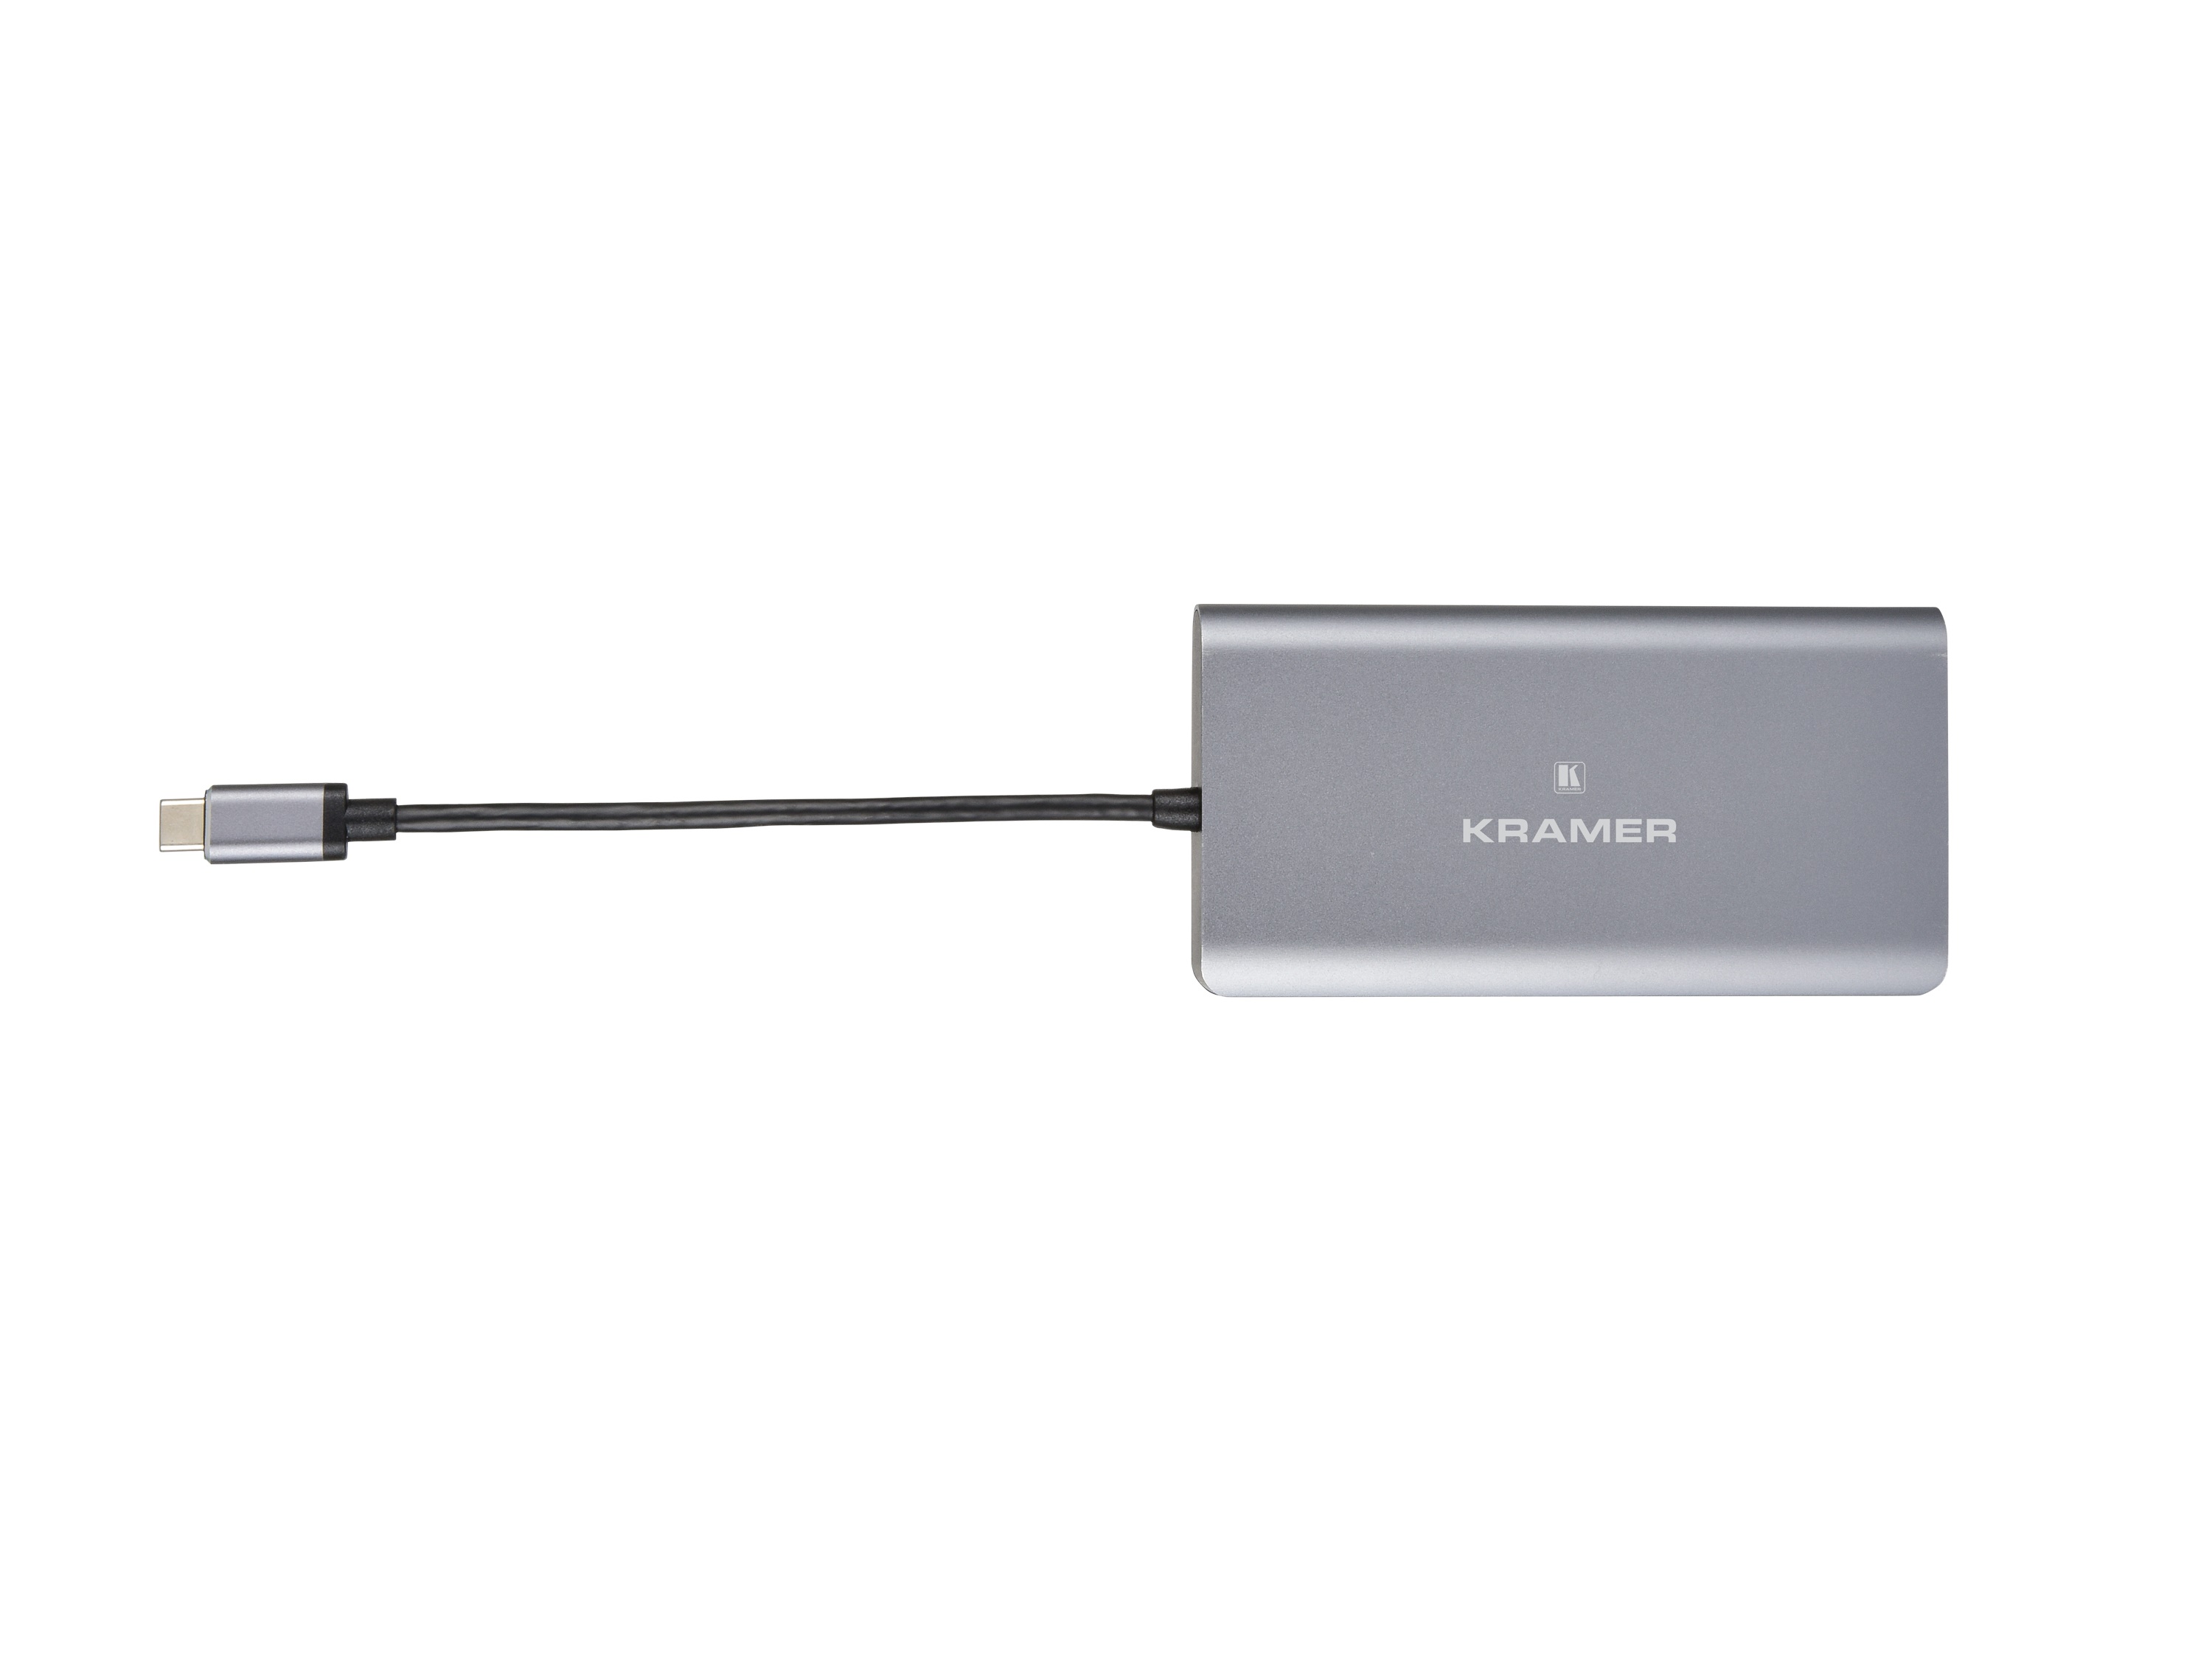 KDOCK-3 USB-C Hub Multiport Adapter by Kramer